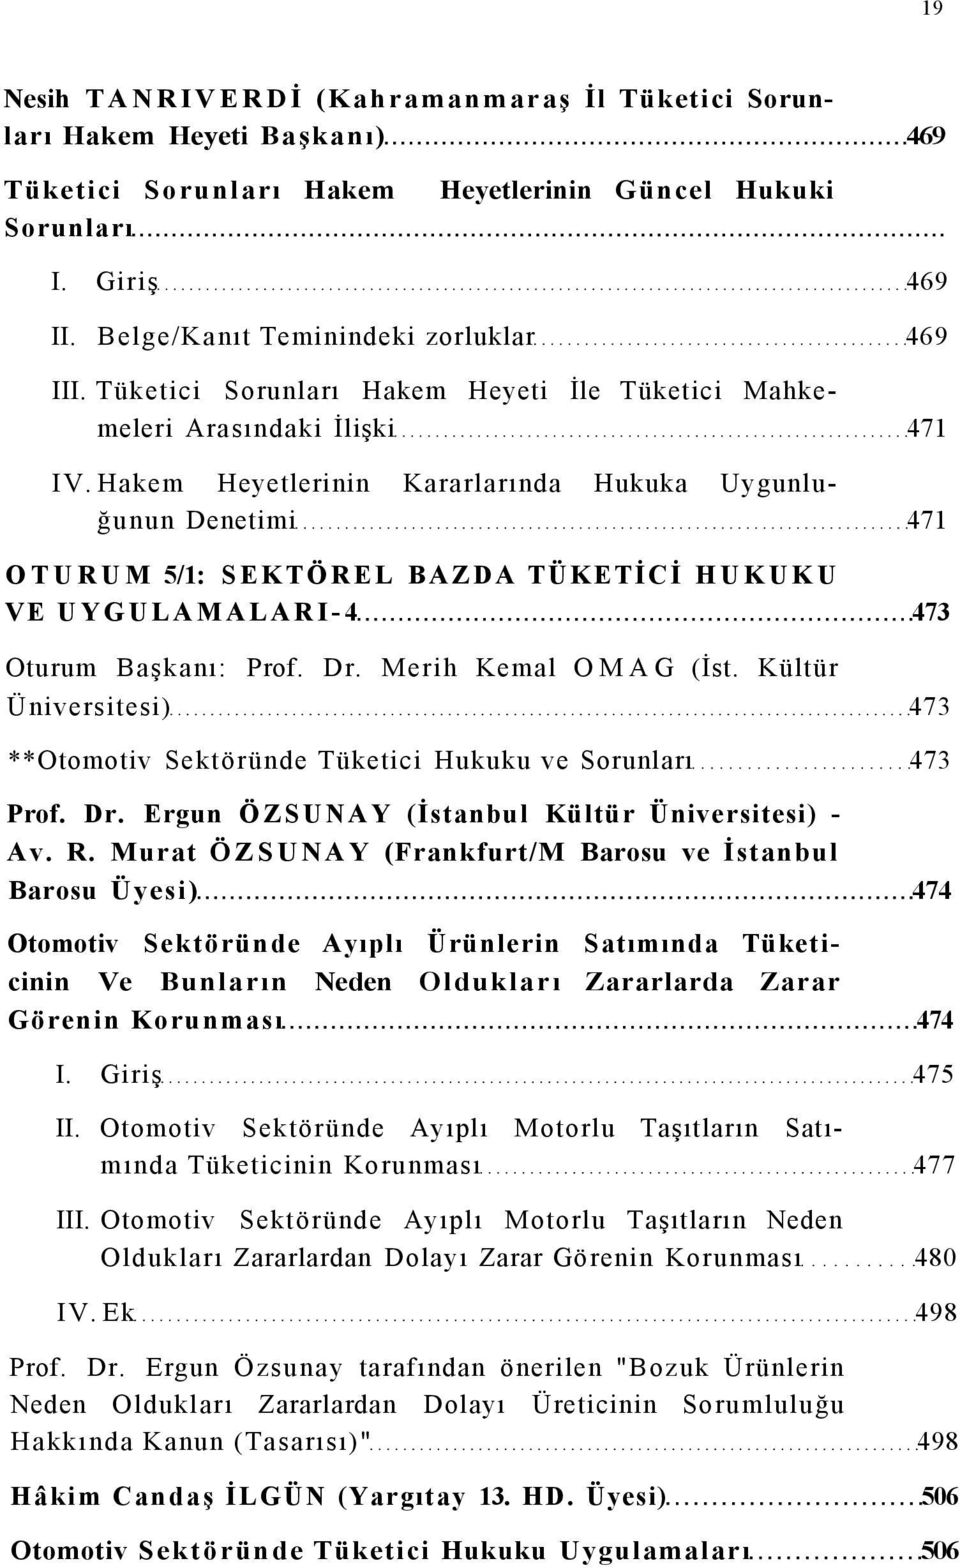 Hakem Heyetlerinin Kararlarında Hukuka Uygunluğunun Denetimi 471 OTURUM 5/1: SEKTÖREL BAZDA TÜKETİCİ HUKUKU VE UYGULAMALARI-4 473 Oturum Başkanı: Prof. Dr. Merih Kemal OMAG (İst.